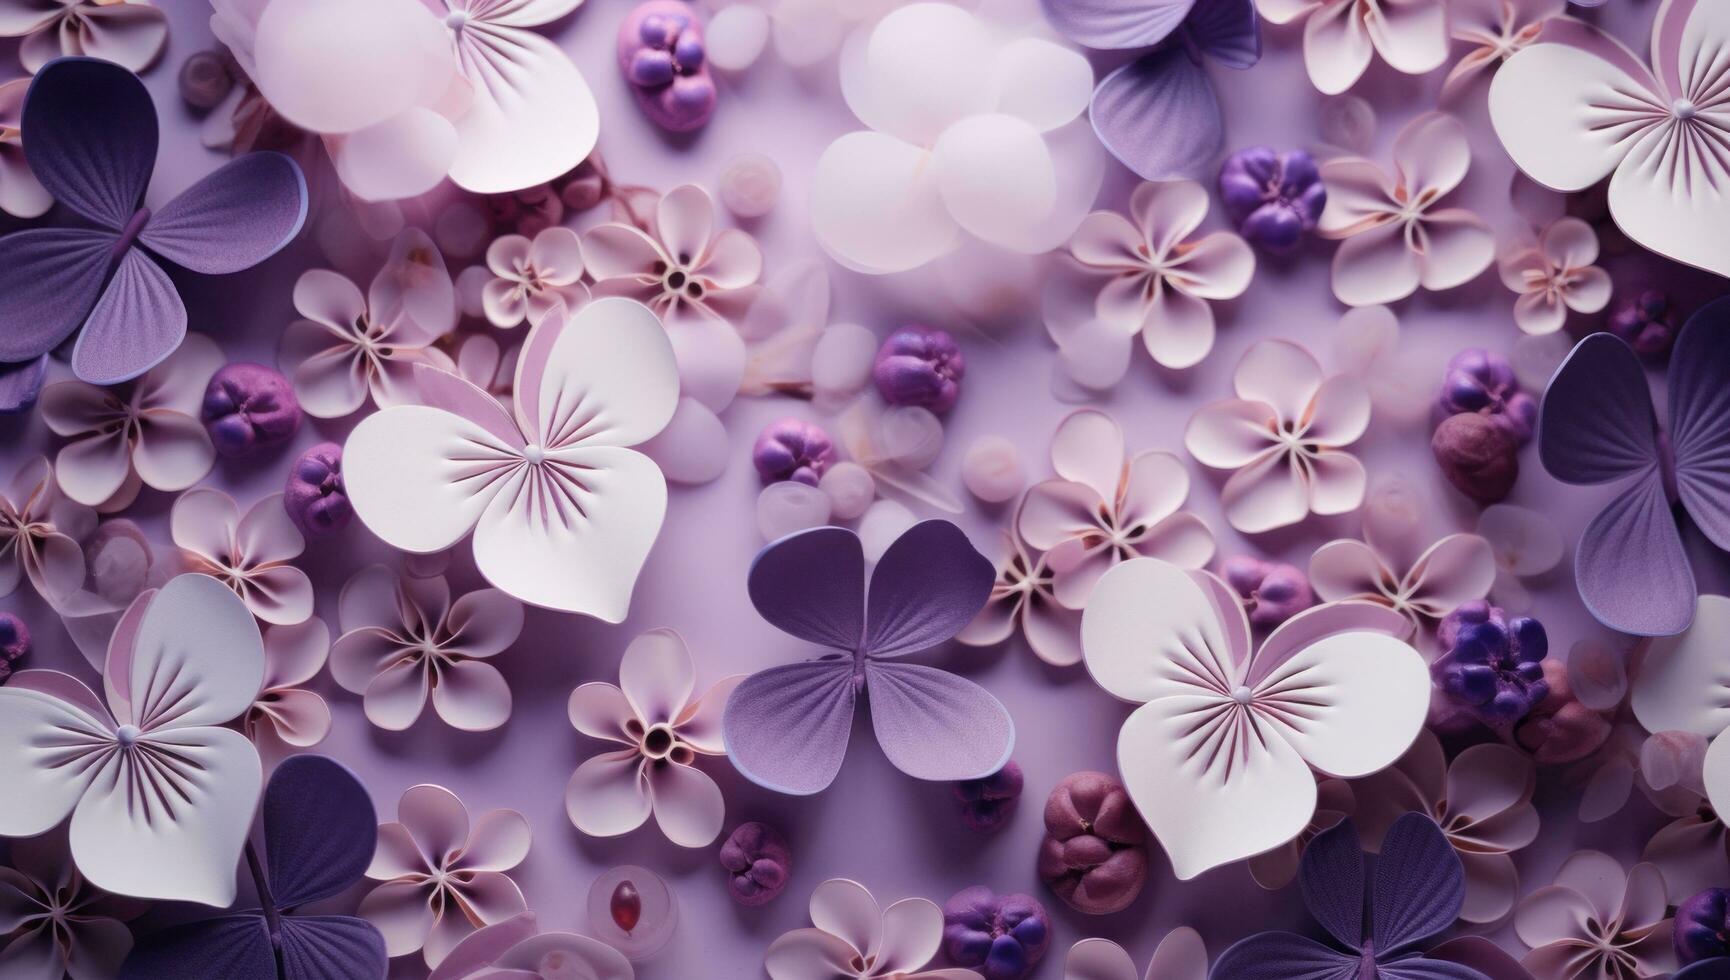 ai generado muchos corazones, flores y corazones terminado púrpura antecedentes foto